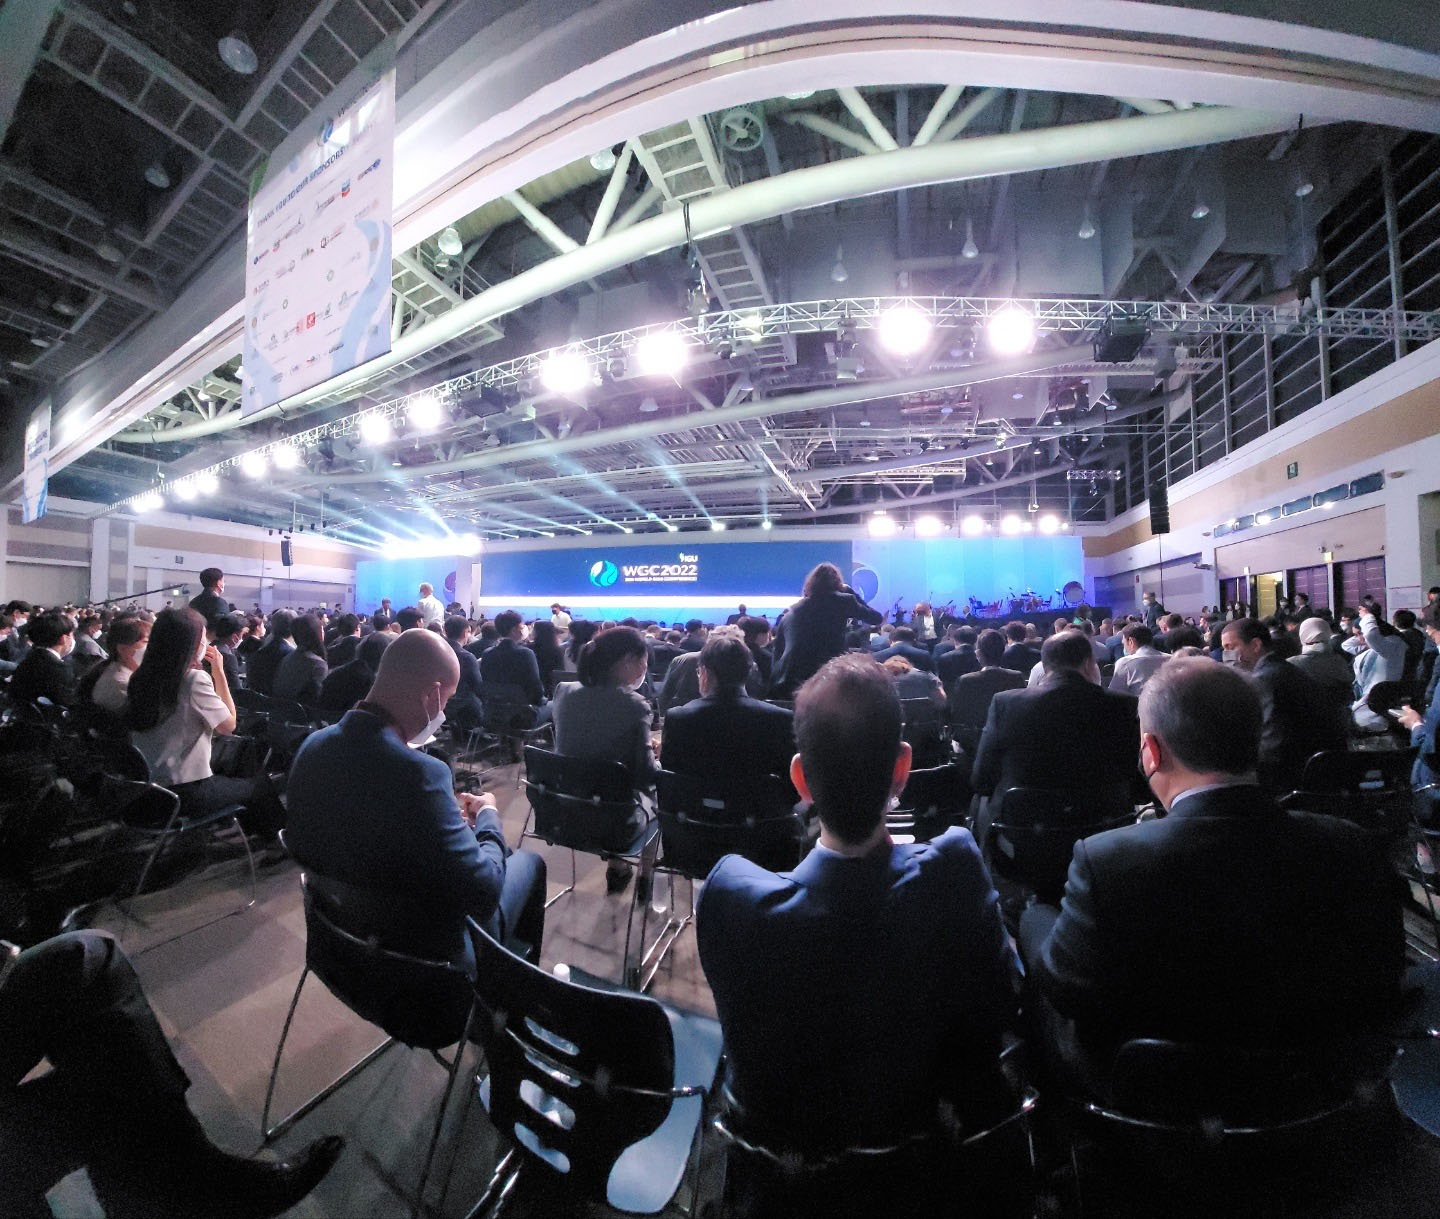 2022 세계가스총회 개회식 무대 및 행사에 참여한 사람들이 앉아있는 모습이다